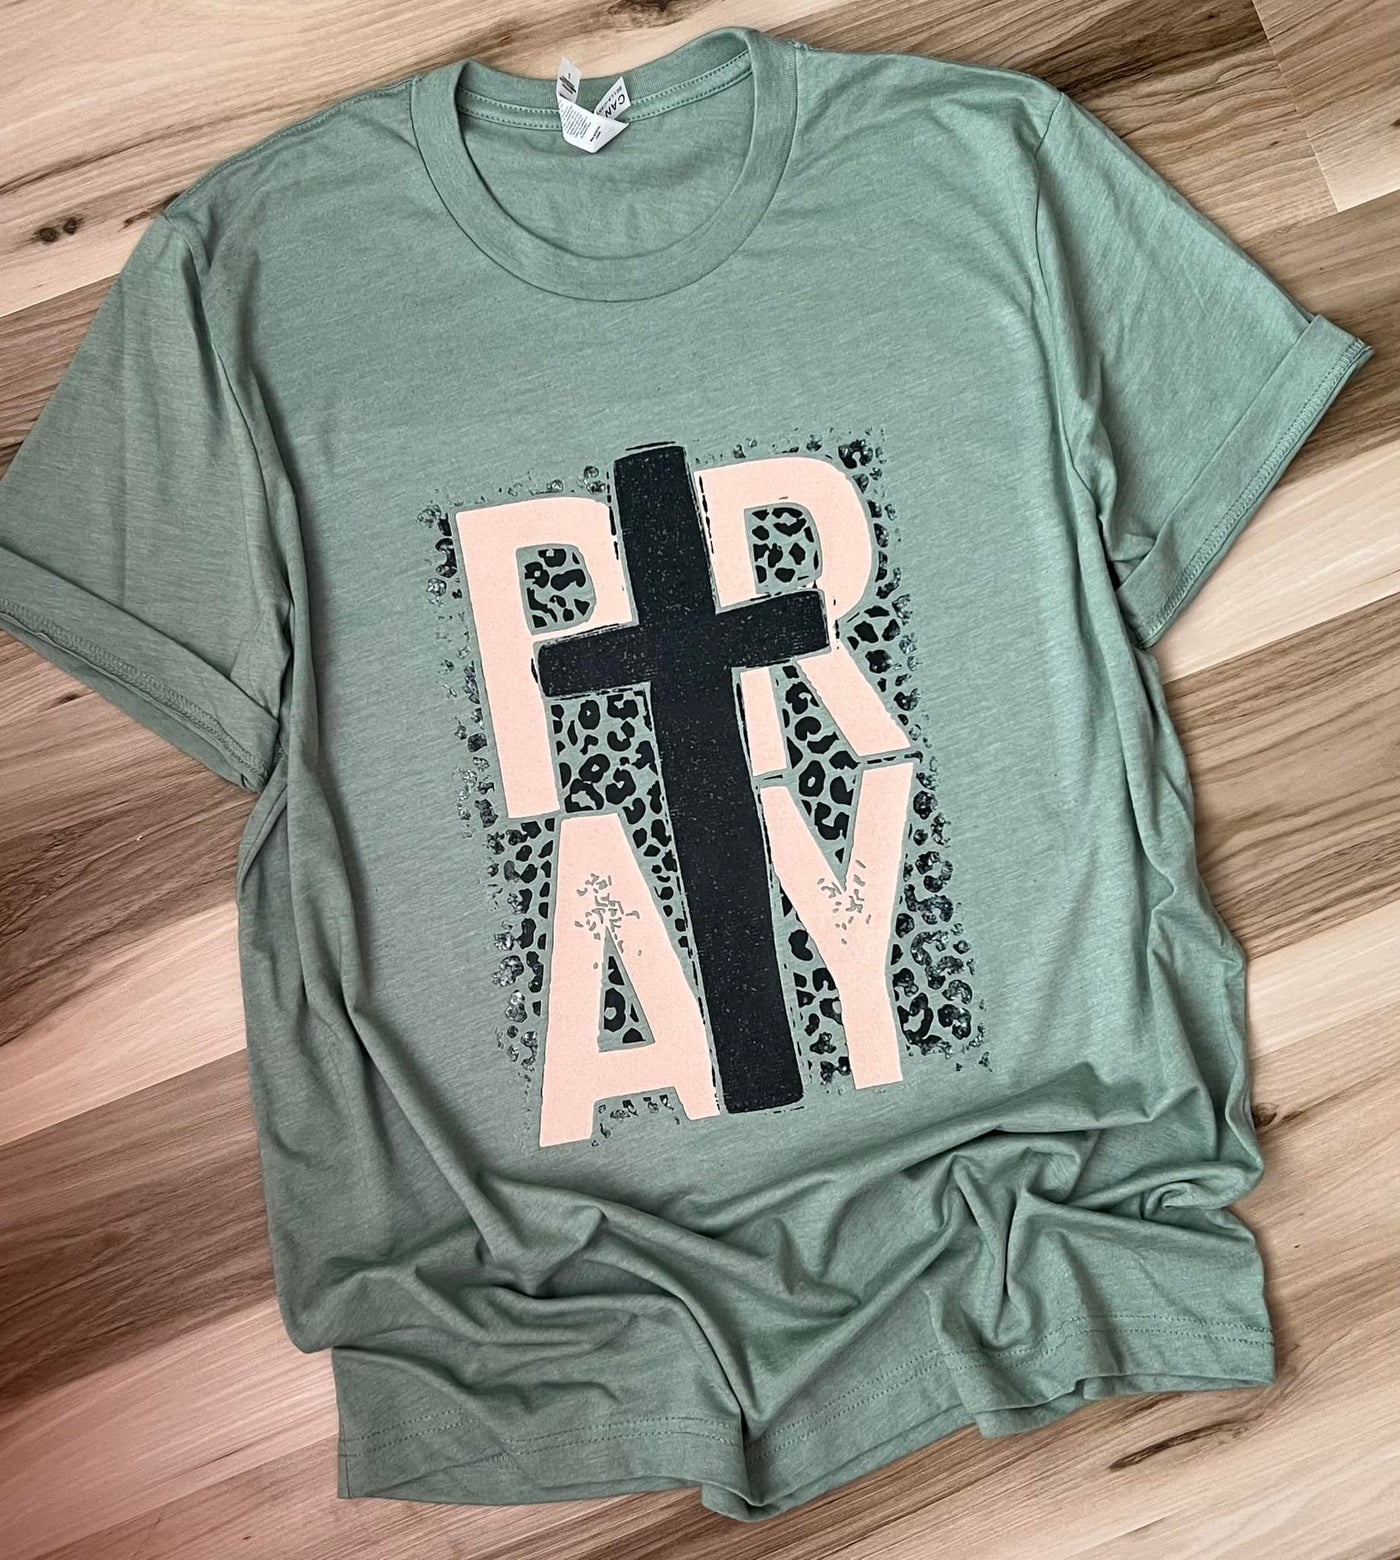 "PRAY" T-shirt